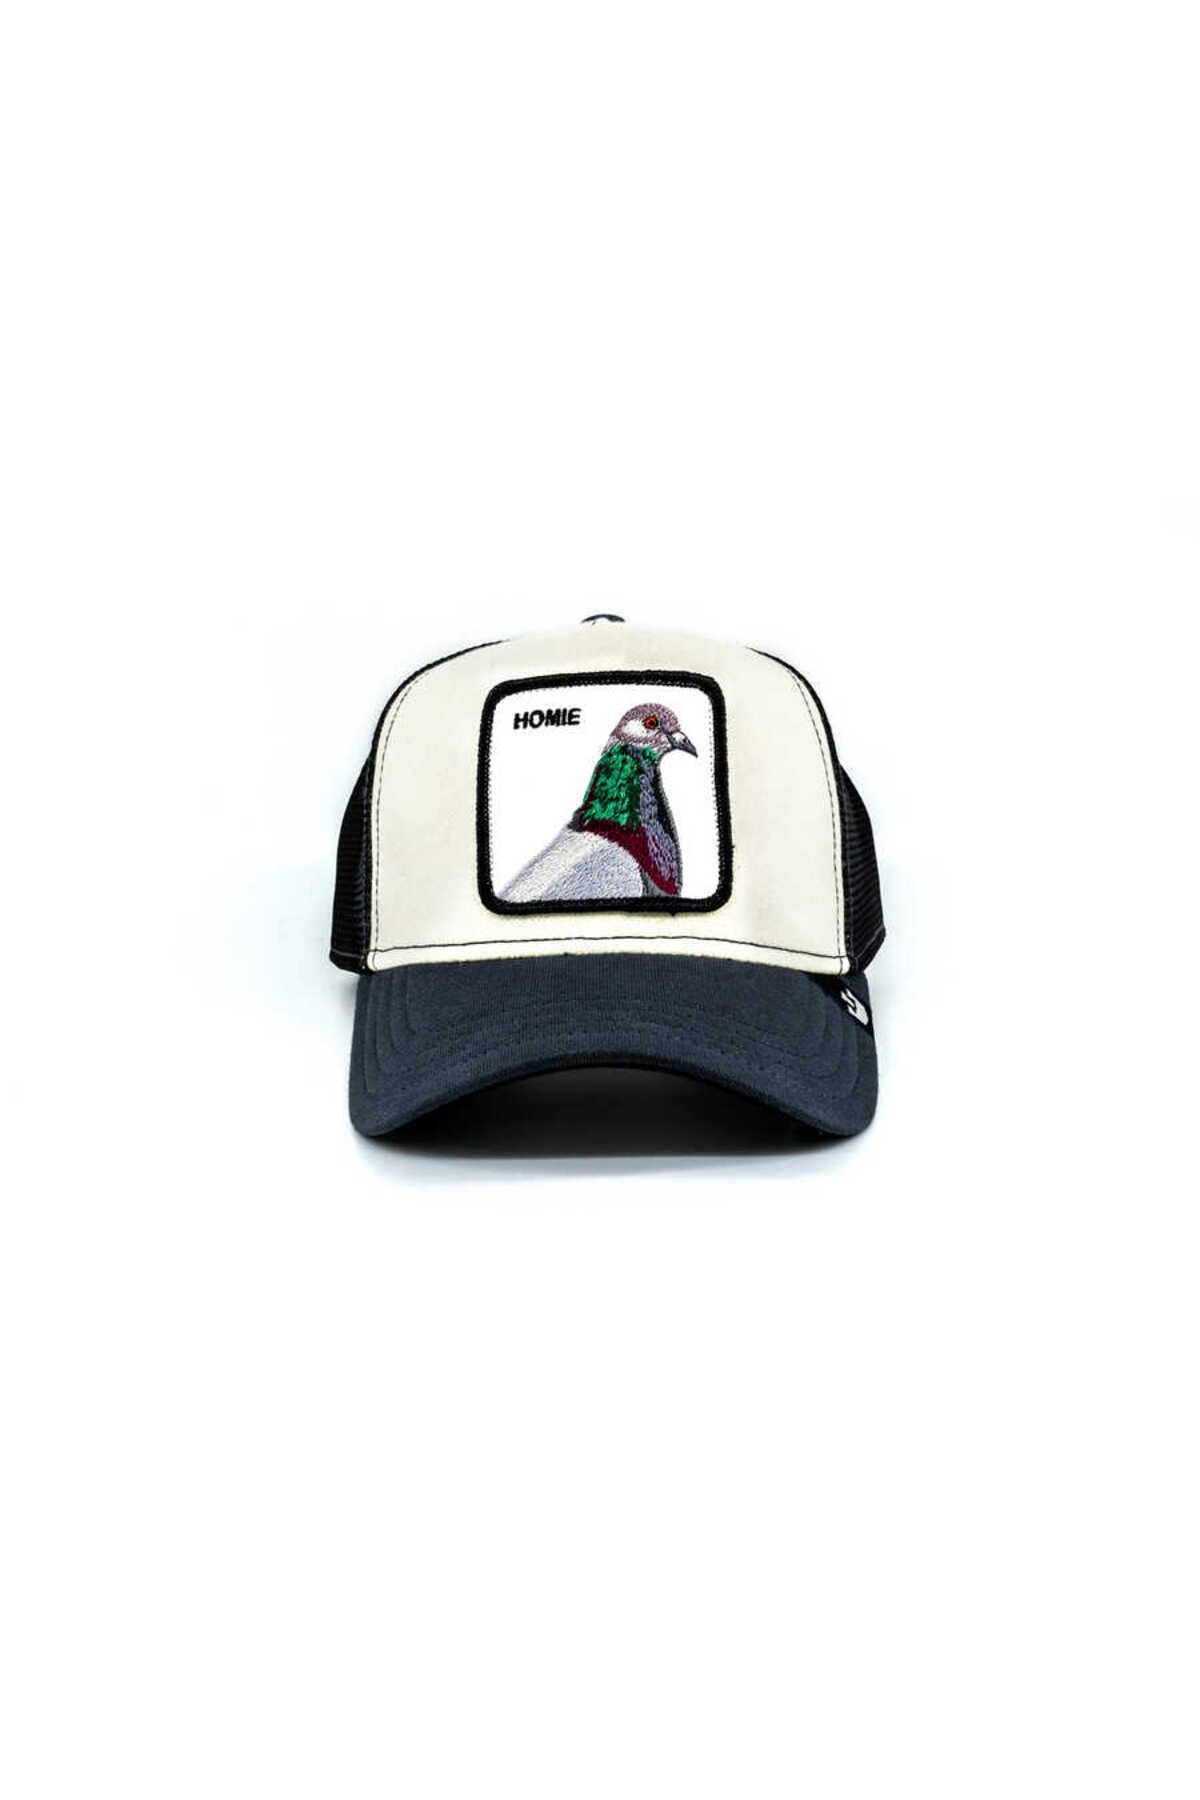 Goorin Bros Homie Pigeon (GÜVERCİN FİGÜR) Şapka